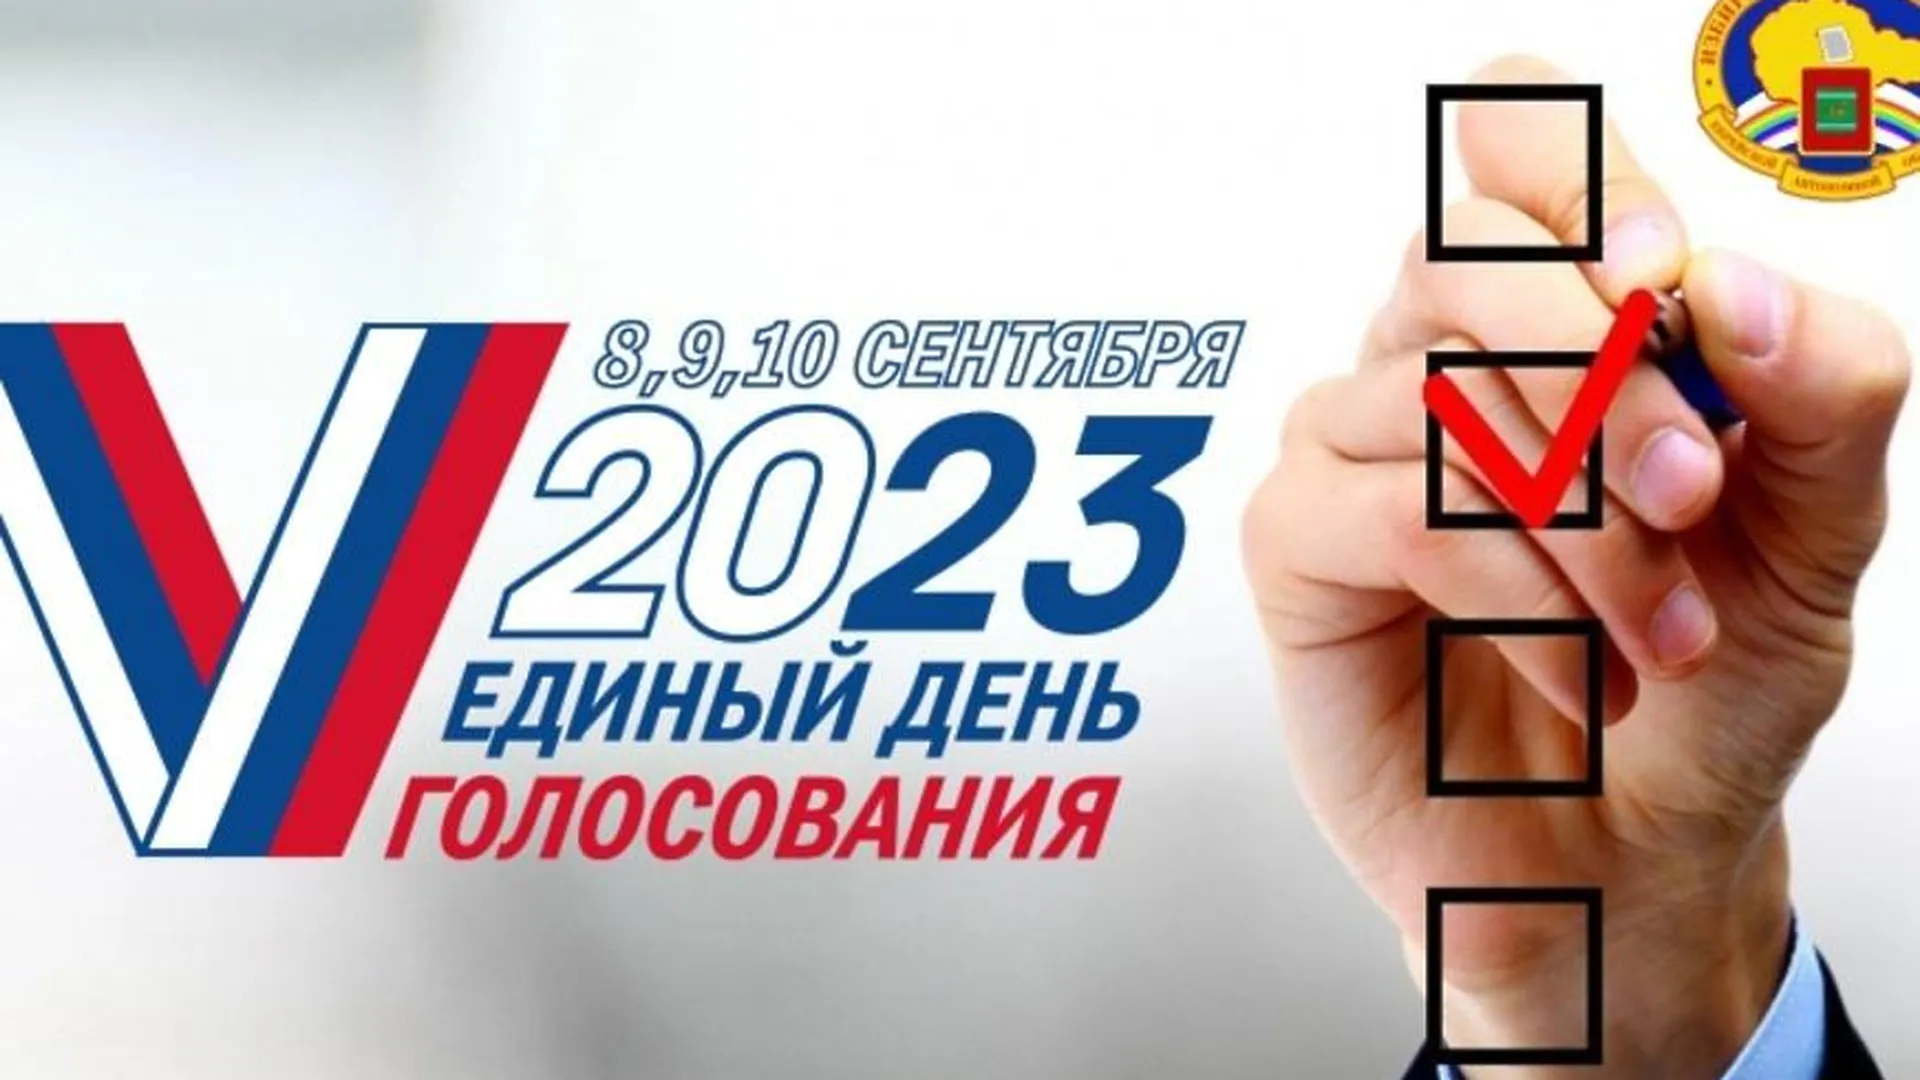 Выборы на 10 часов. Единый день голосования 2023. Единый день голосования 10 сентября 2023 года. Выборы губернатора 2023. Выборы депутатов 2023 Белгород.